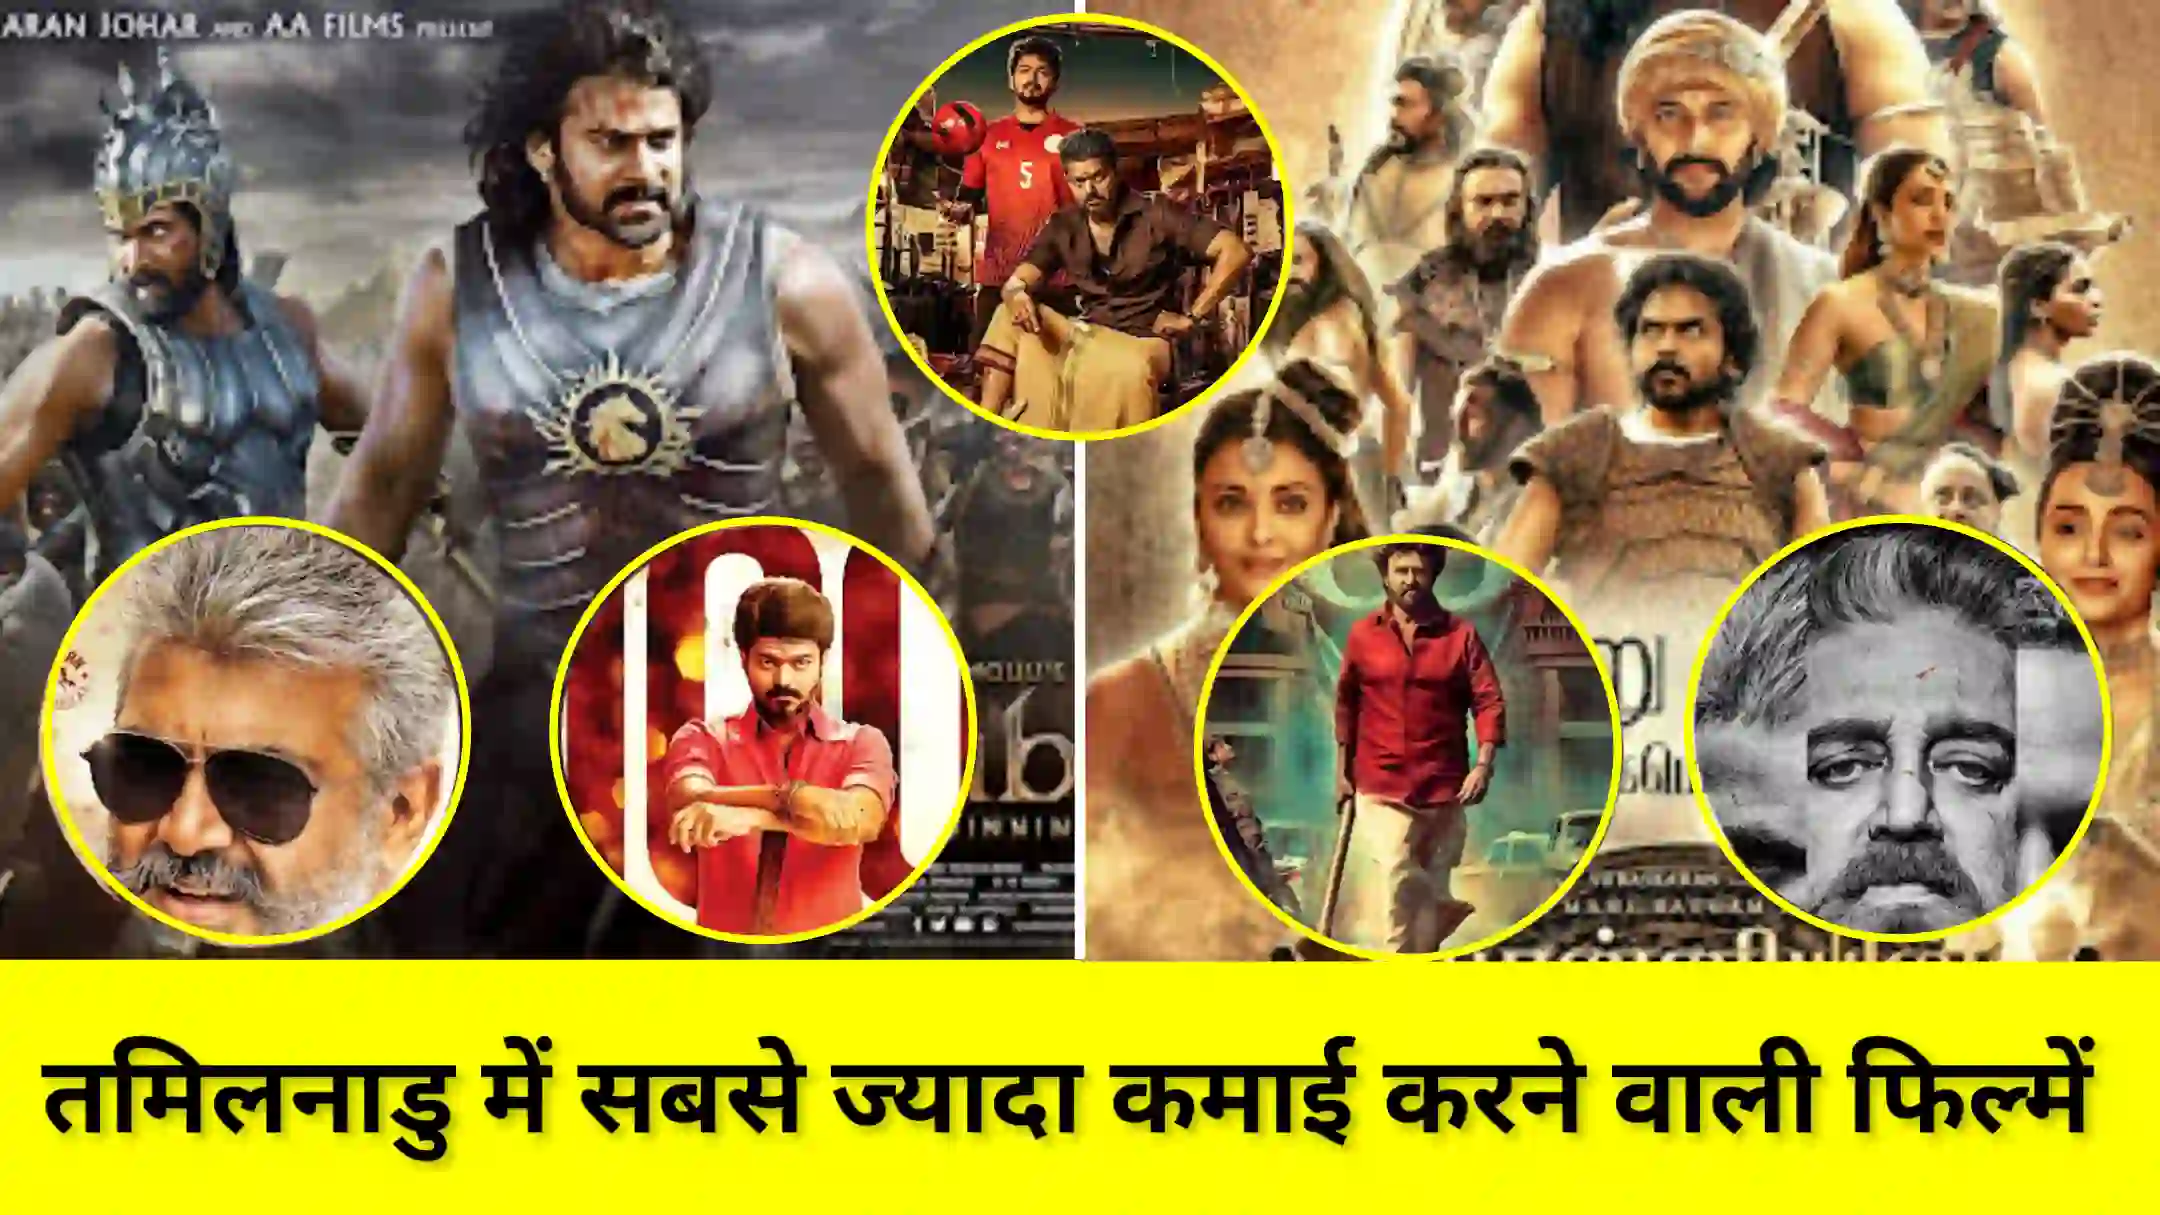 Highest Grossing Movie In Tamil Nadu